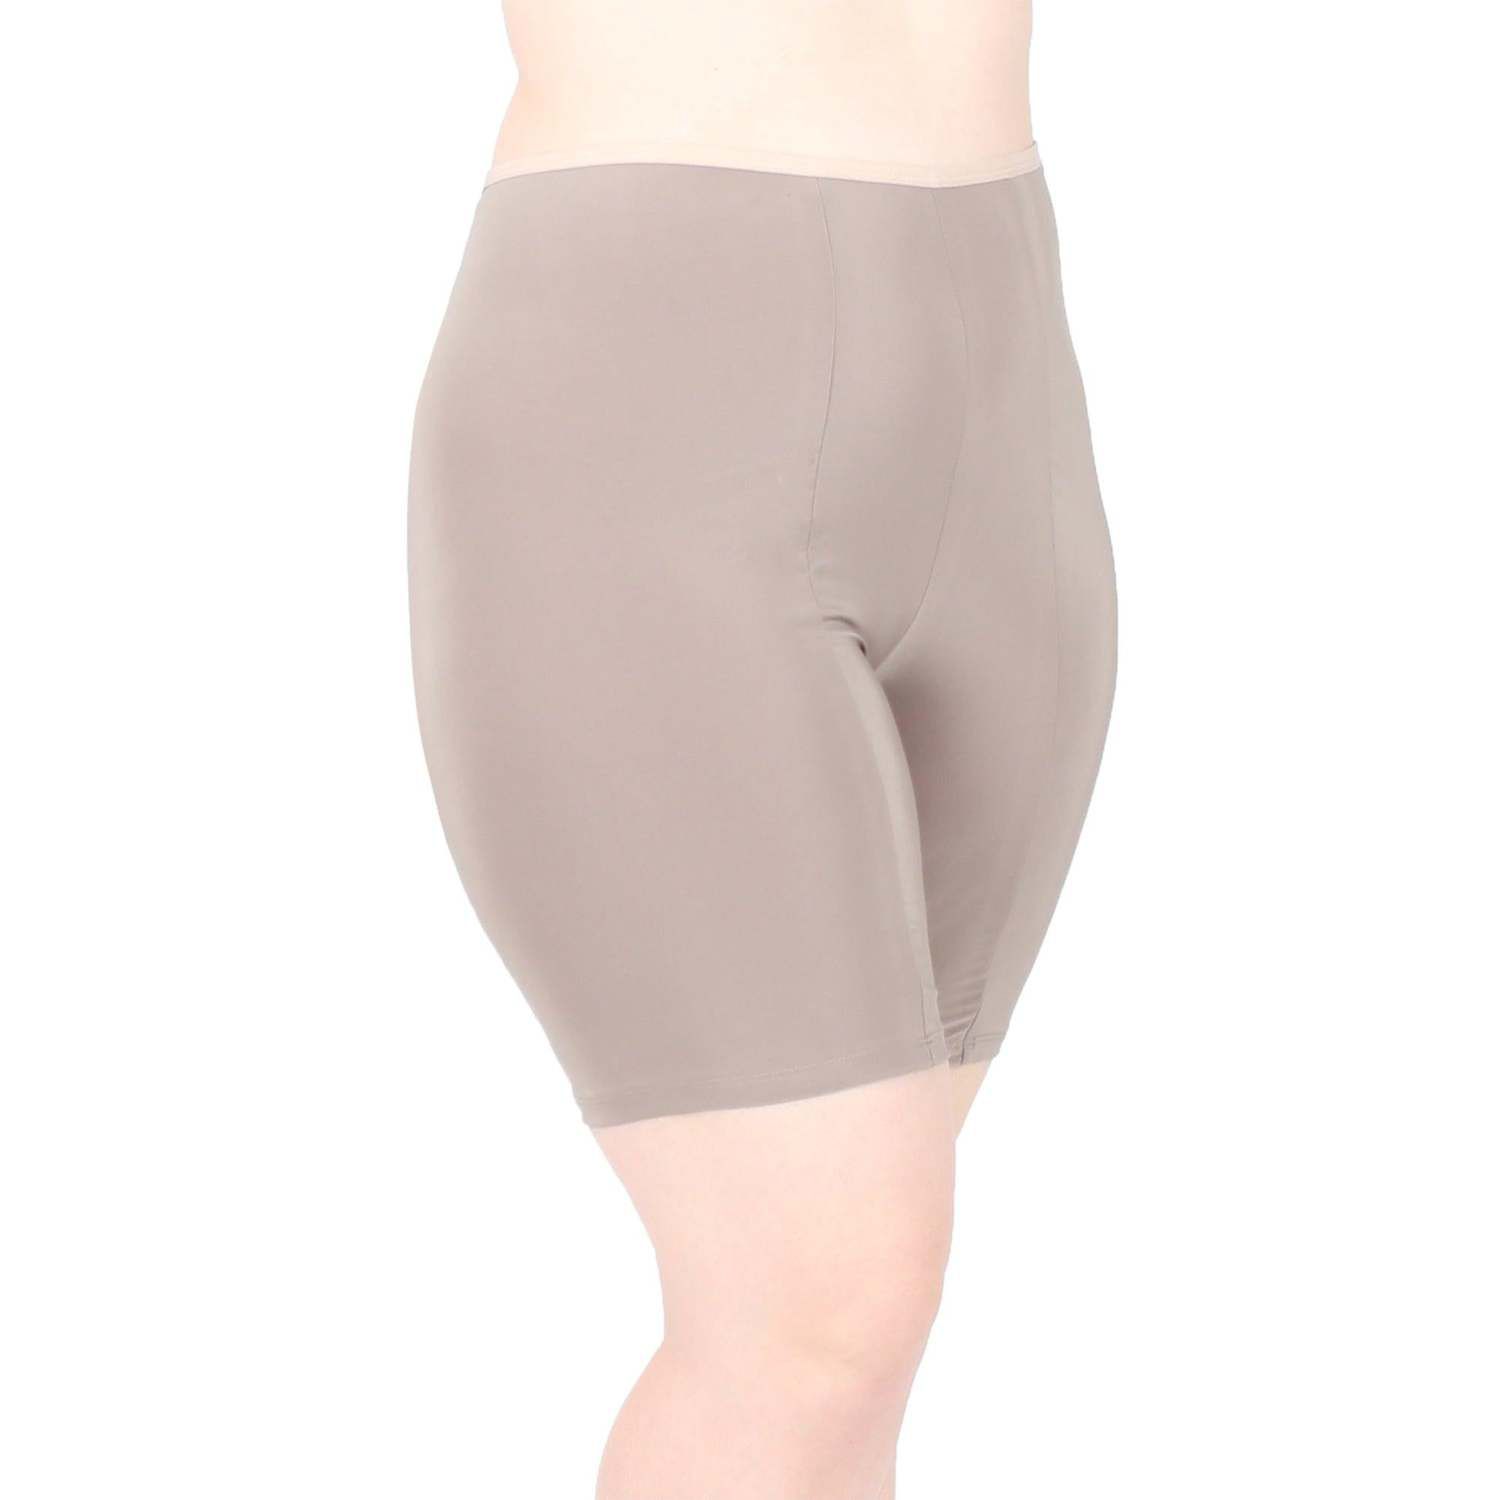 Короткие шорты с ультравысокой талией, впитывающие влагу и предотвращающие натирание, для нижнего белья Undersummers